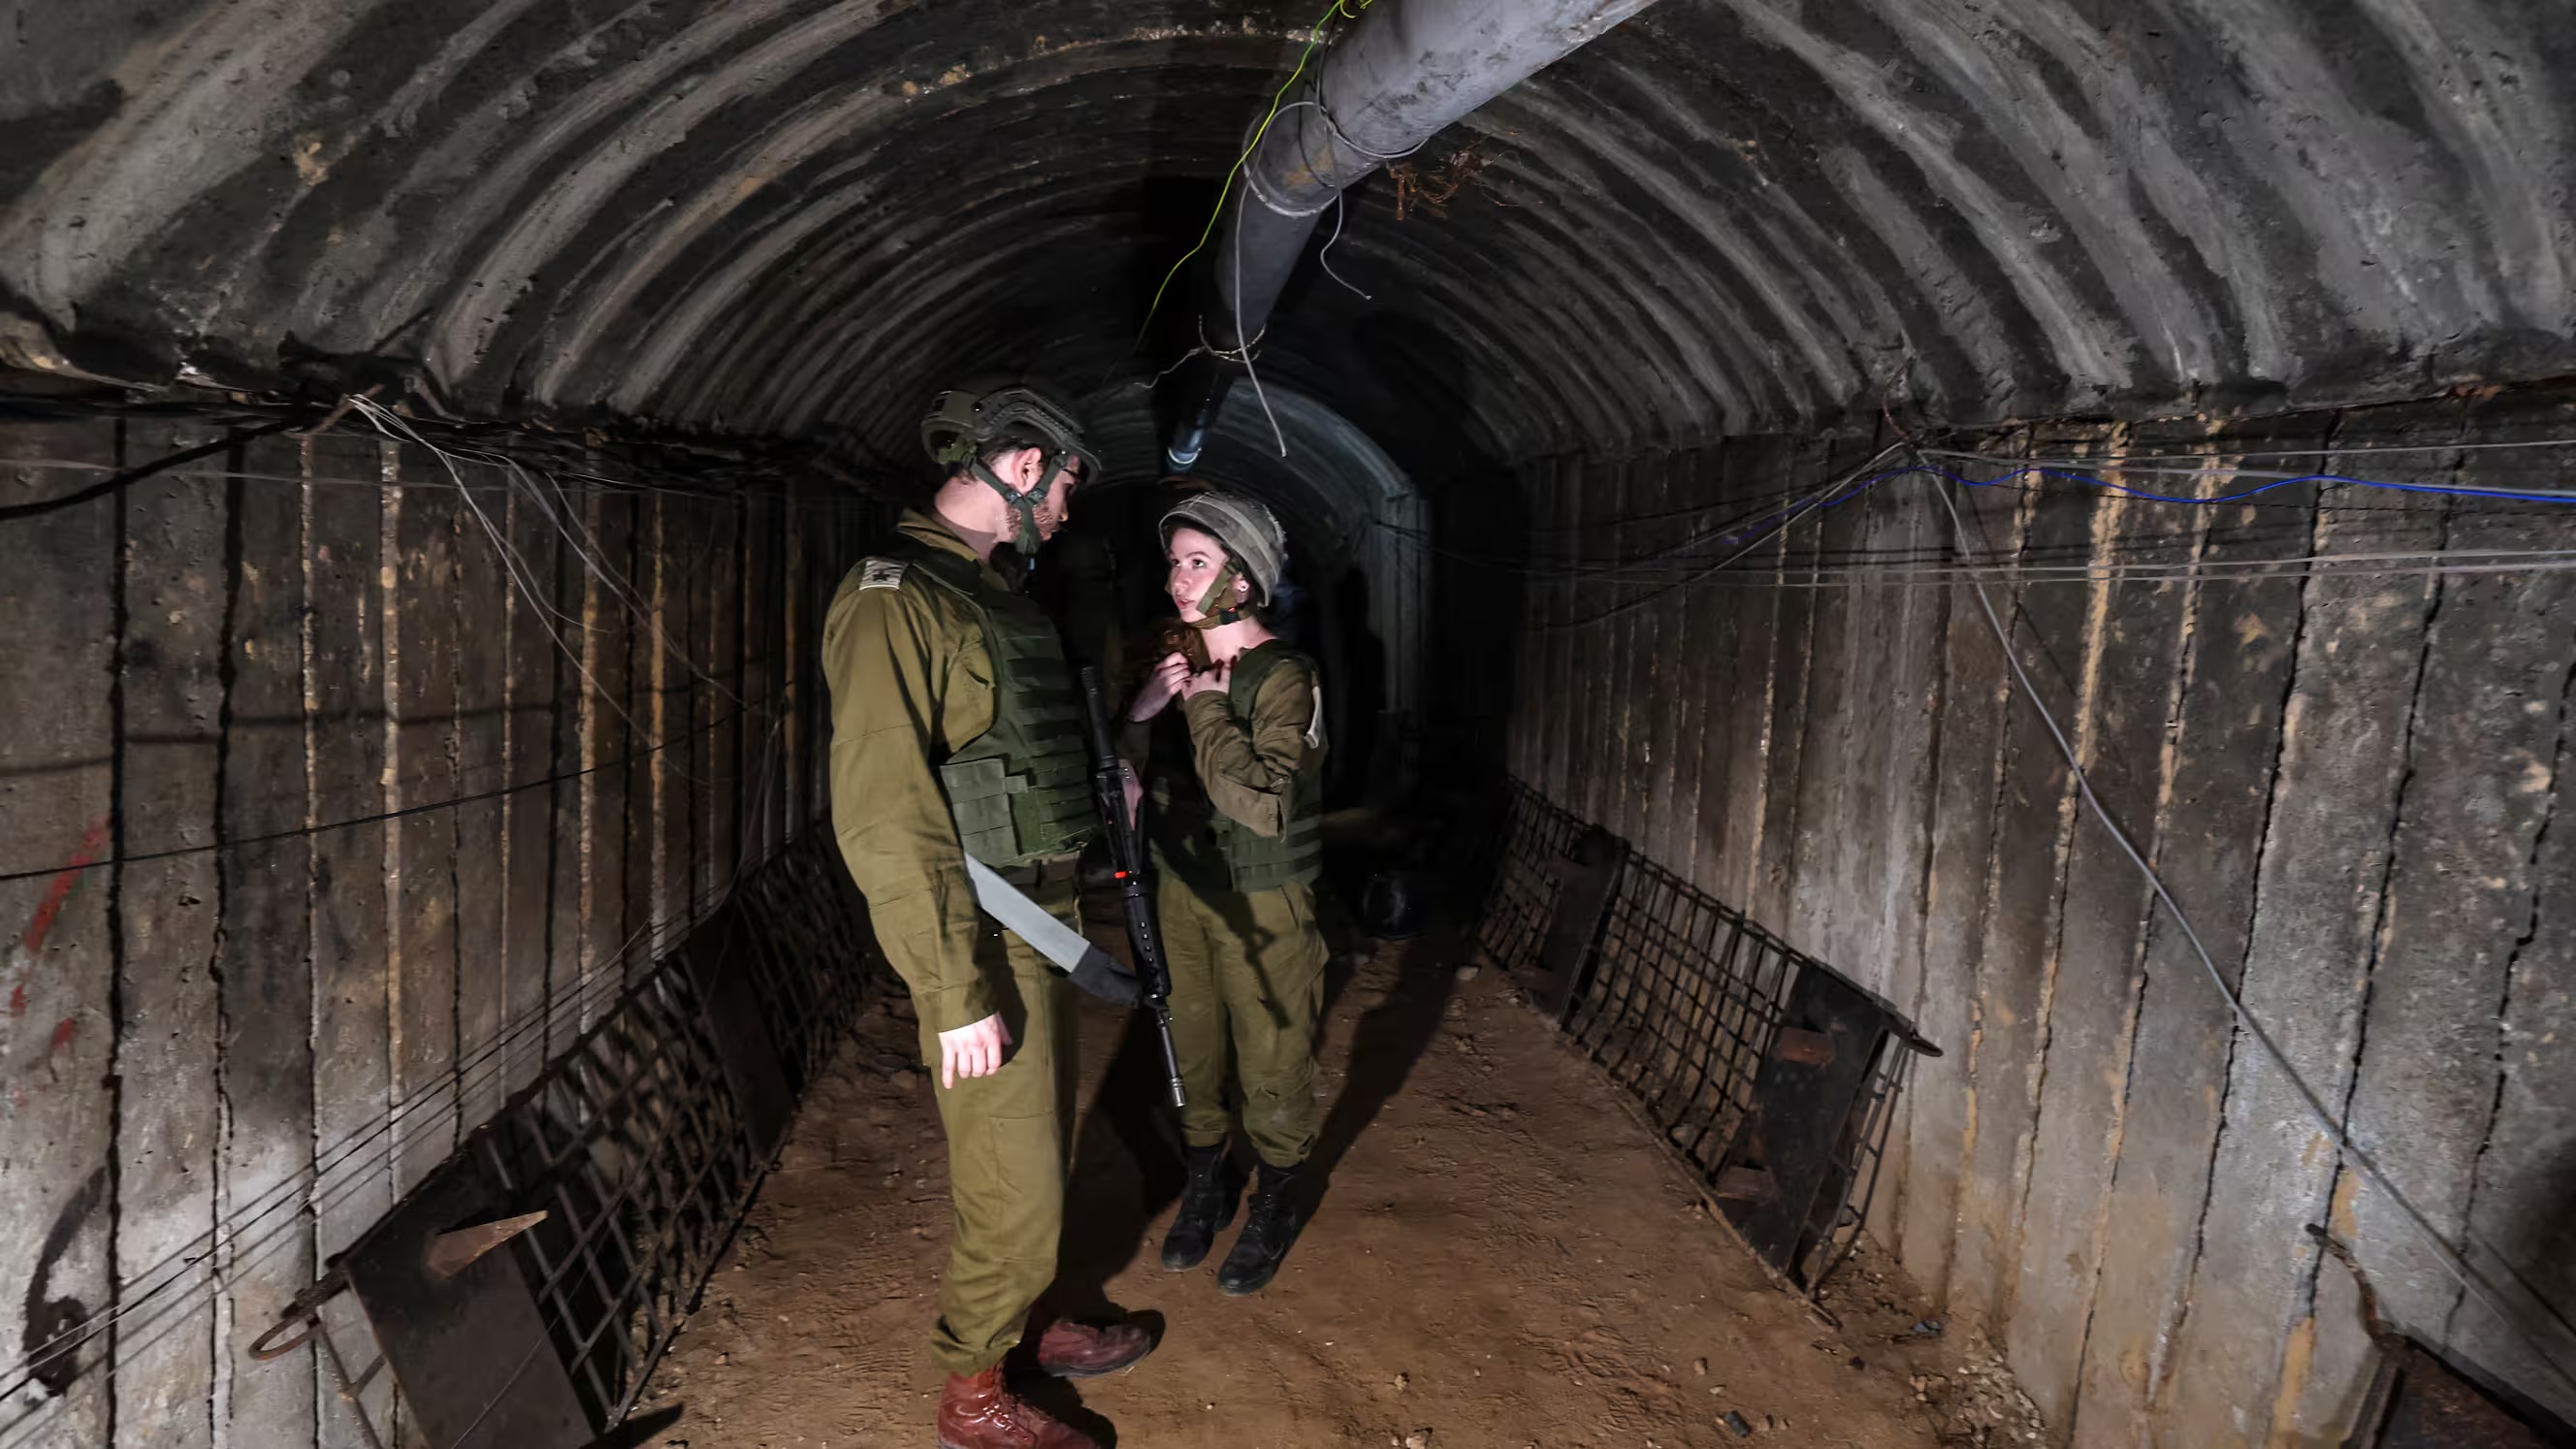 جنديان إسرائيليان في نفق يُعرض من قبل جيش الدفاع الإسرائيلي كأكبر نفق لحركة حماس